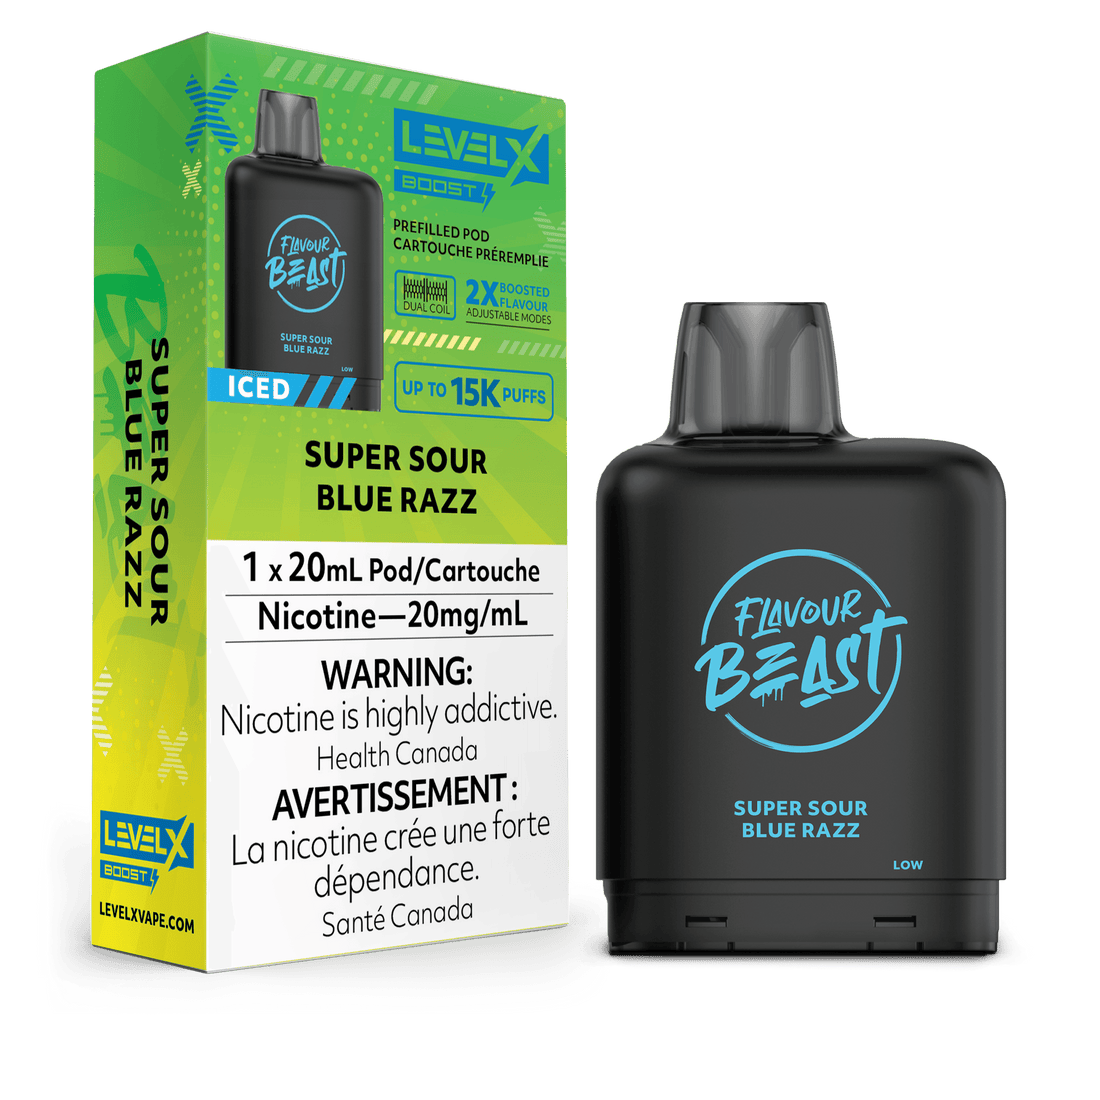 Level X Boost Flavour Beast - Super Sour Blue Razz Iced - Vapor Shoppe